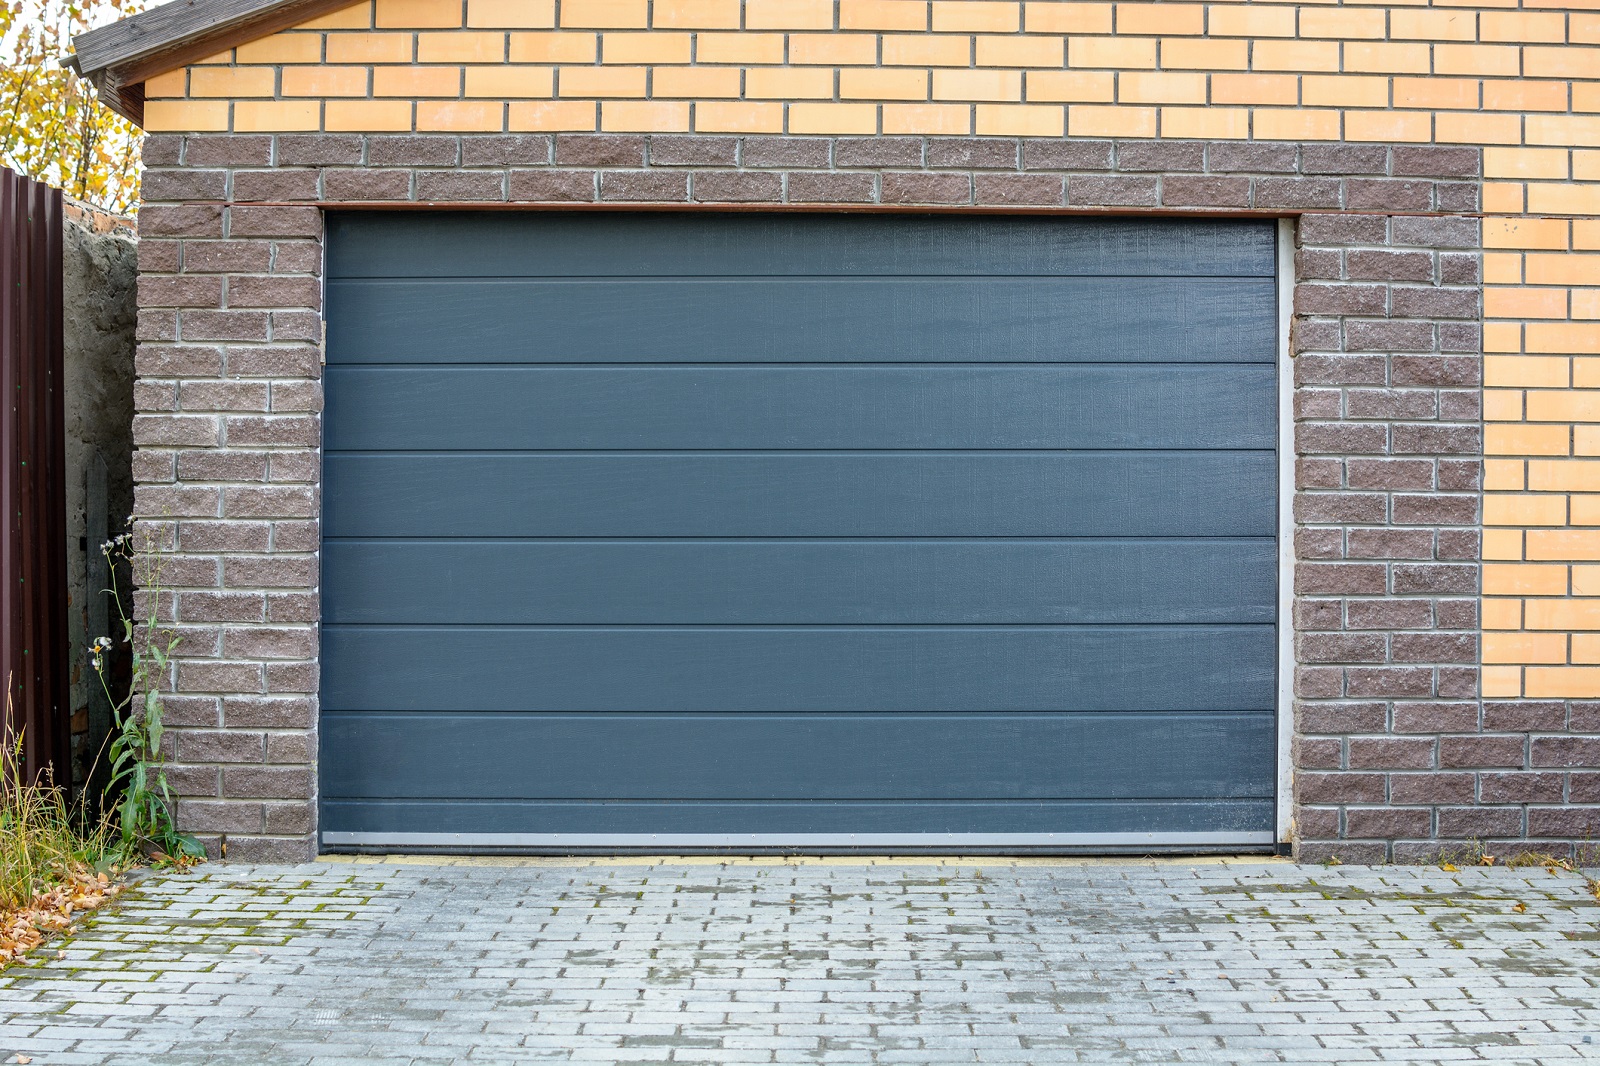 Czym cechują się segmentowe bramy garażowe?